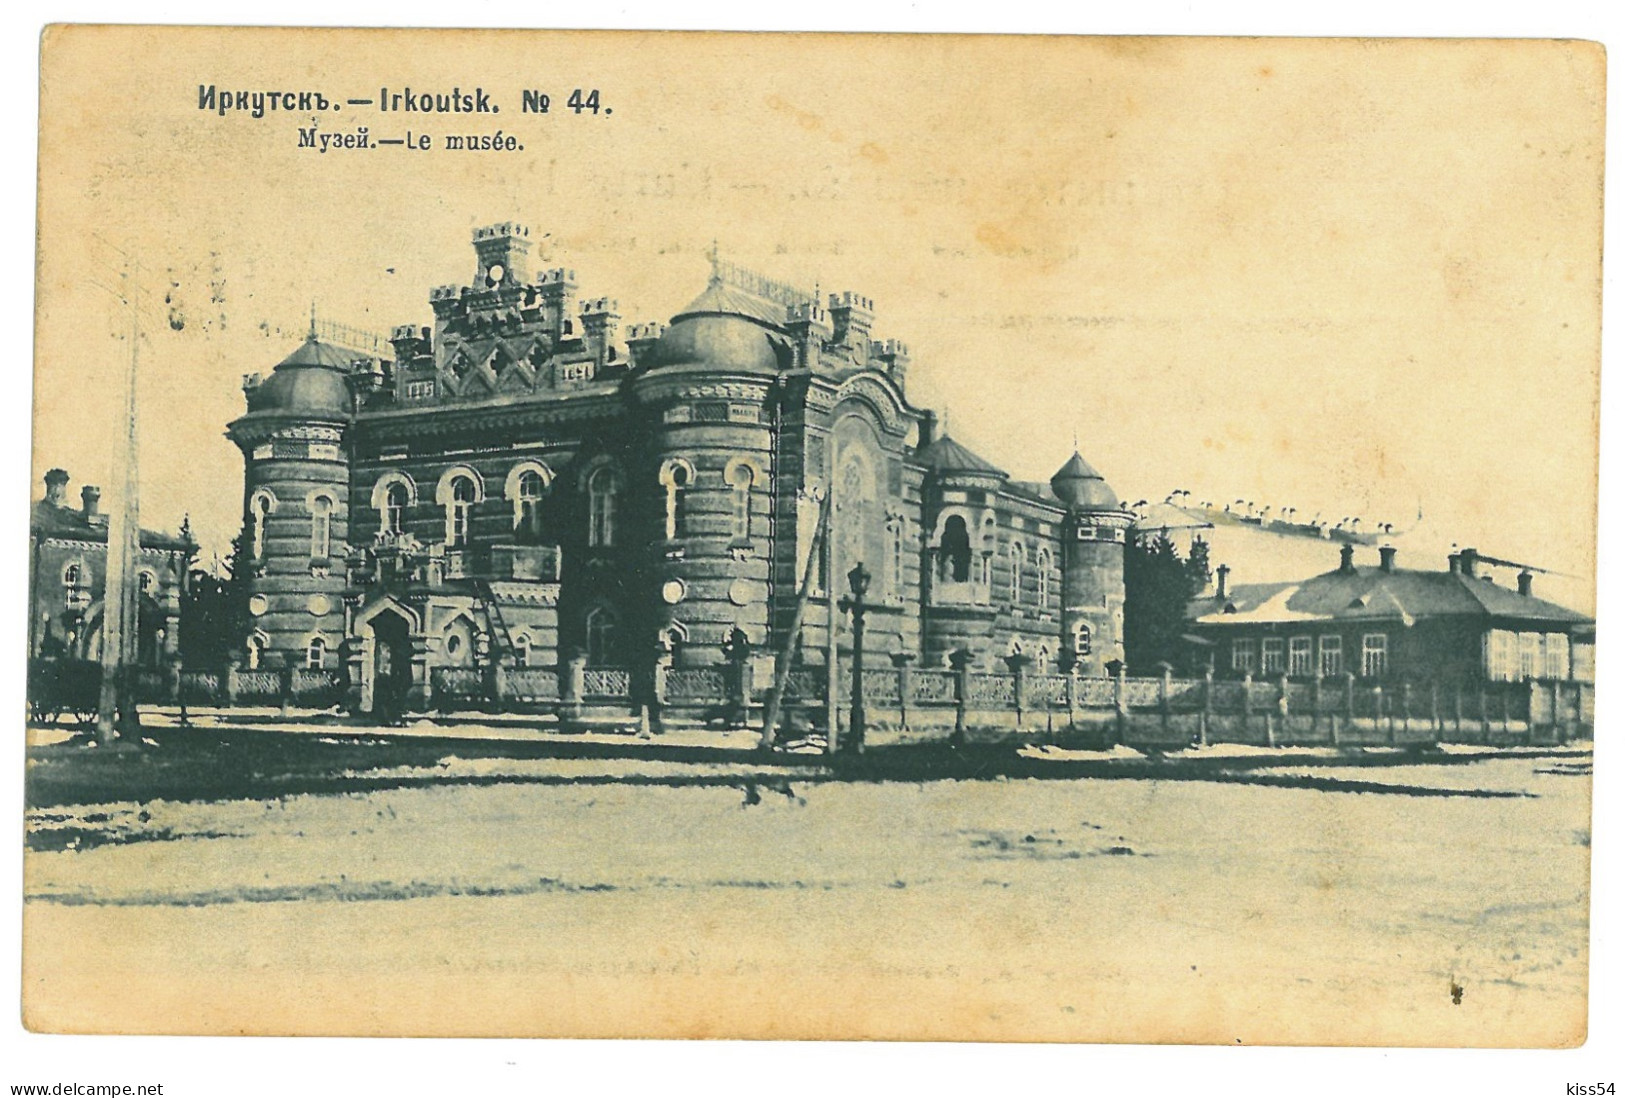 RUS 93 - 23787 IRKUTSK, Market & Museum, Russia - Old Postcard - Used - 1908 - Russia